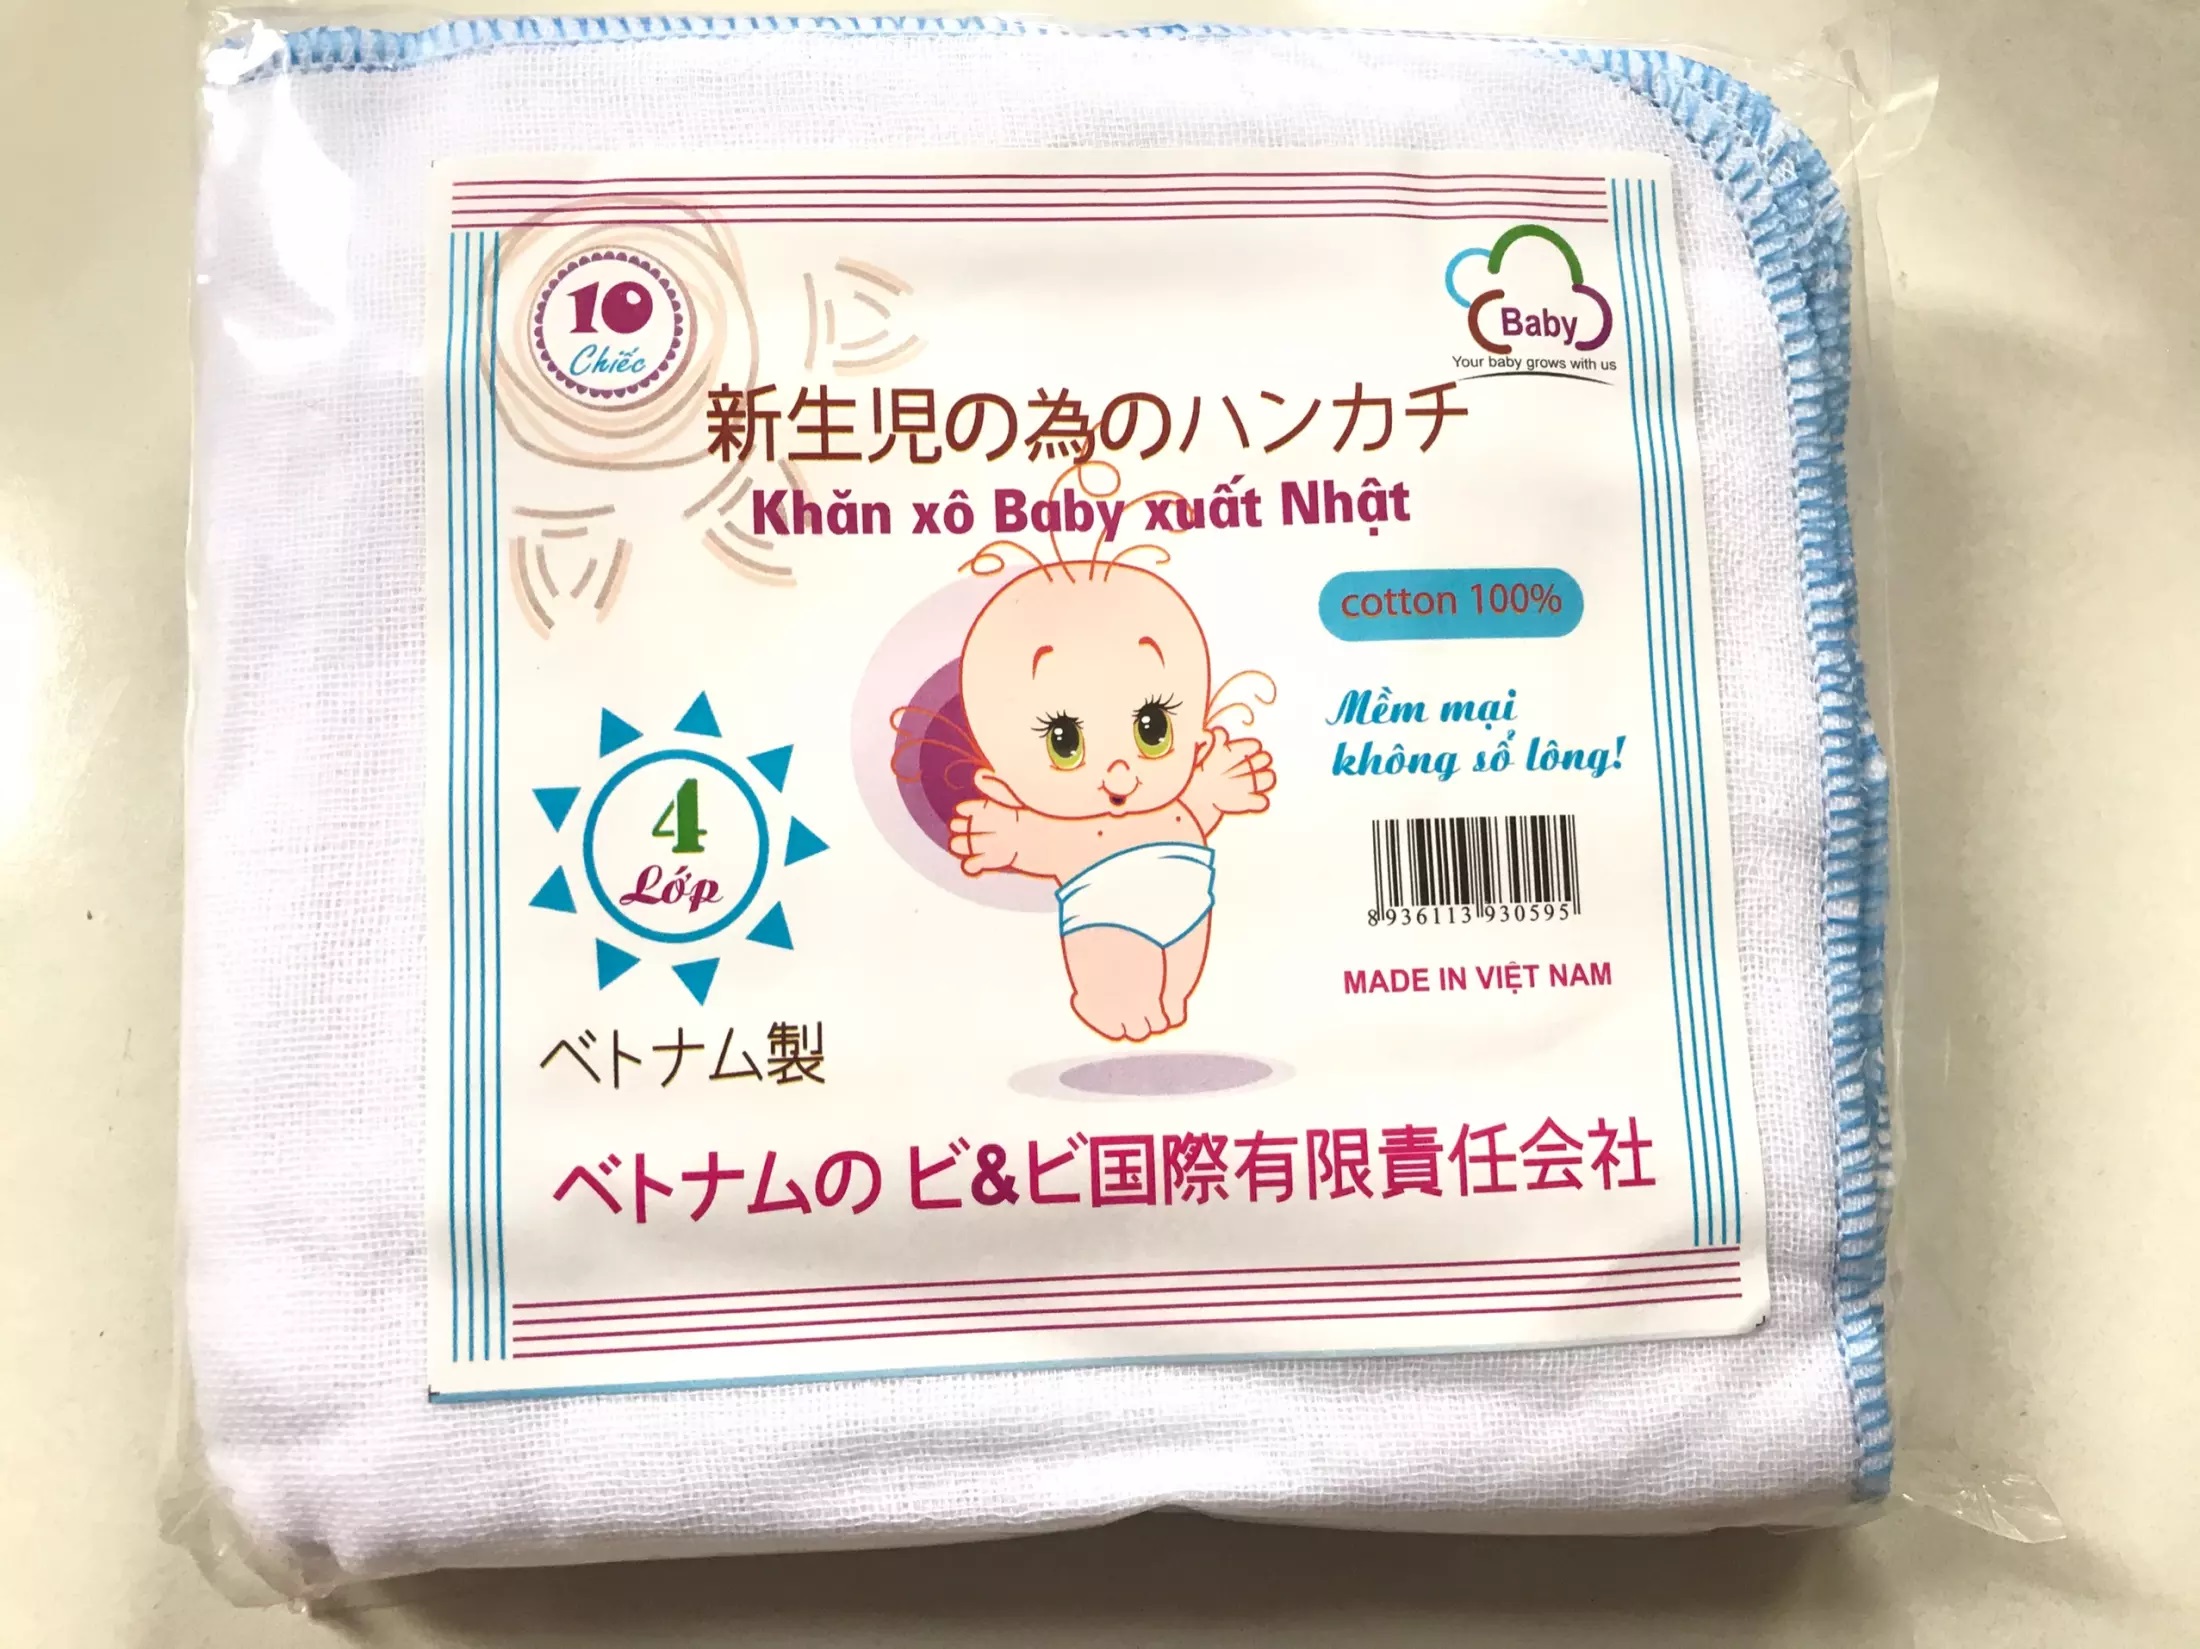 Set 10 khăn xô khăn sữa Baby xuất Nhật 4 lớp 2 lớp bằng chất liệu 100%